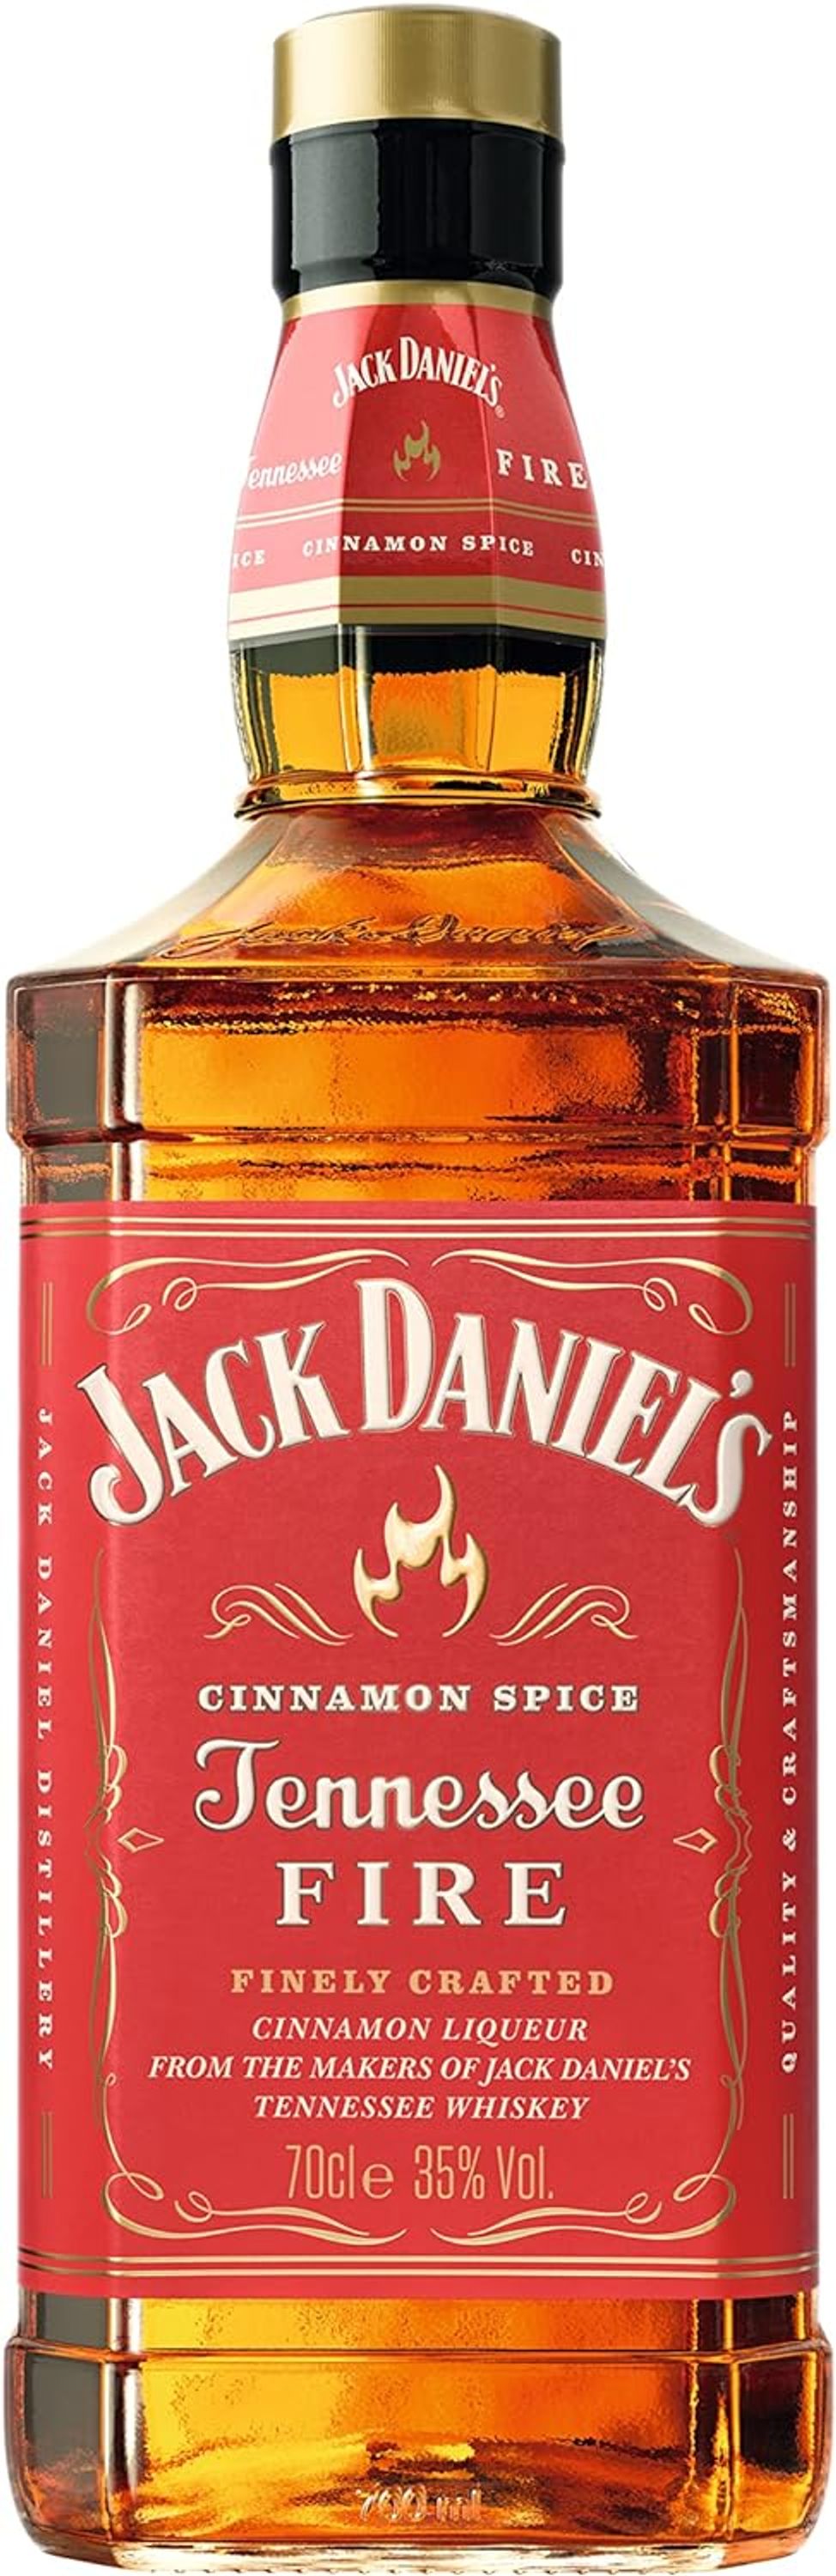 Jack Daniel's Tennessee Fire 0.7l, alc. 35 Vol.-%